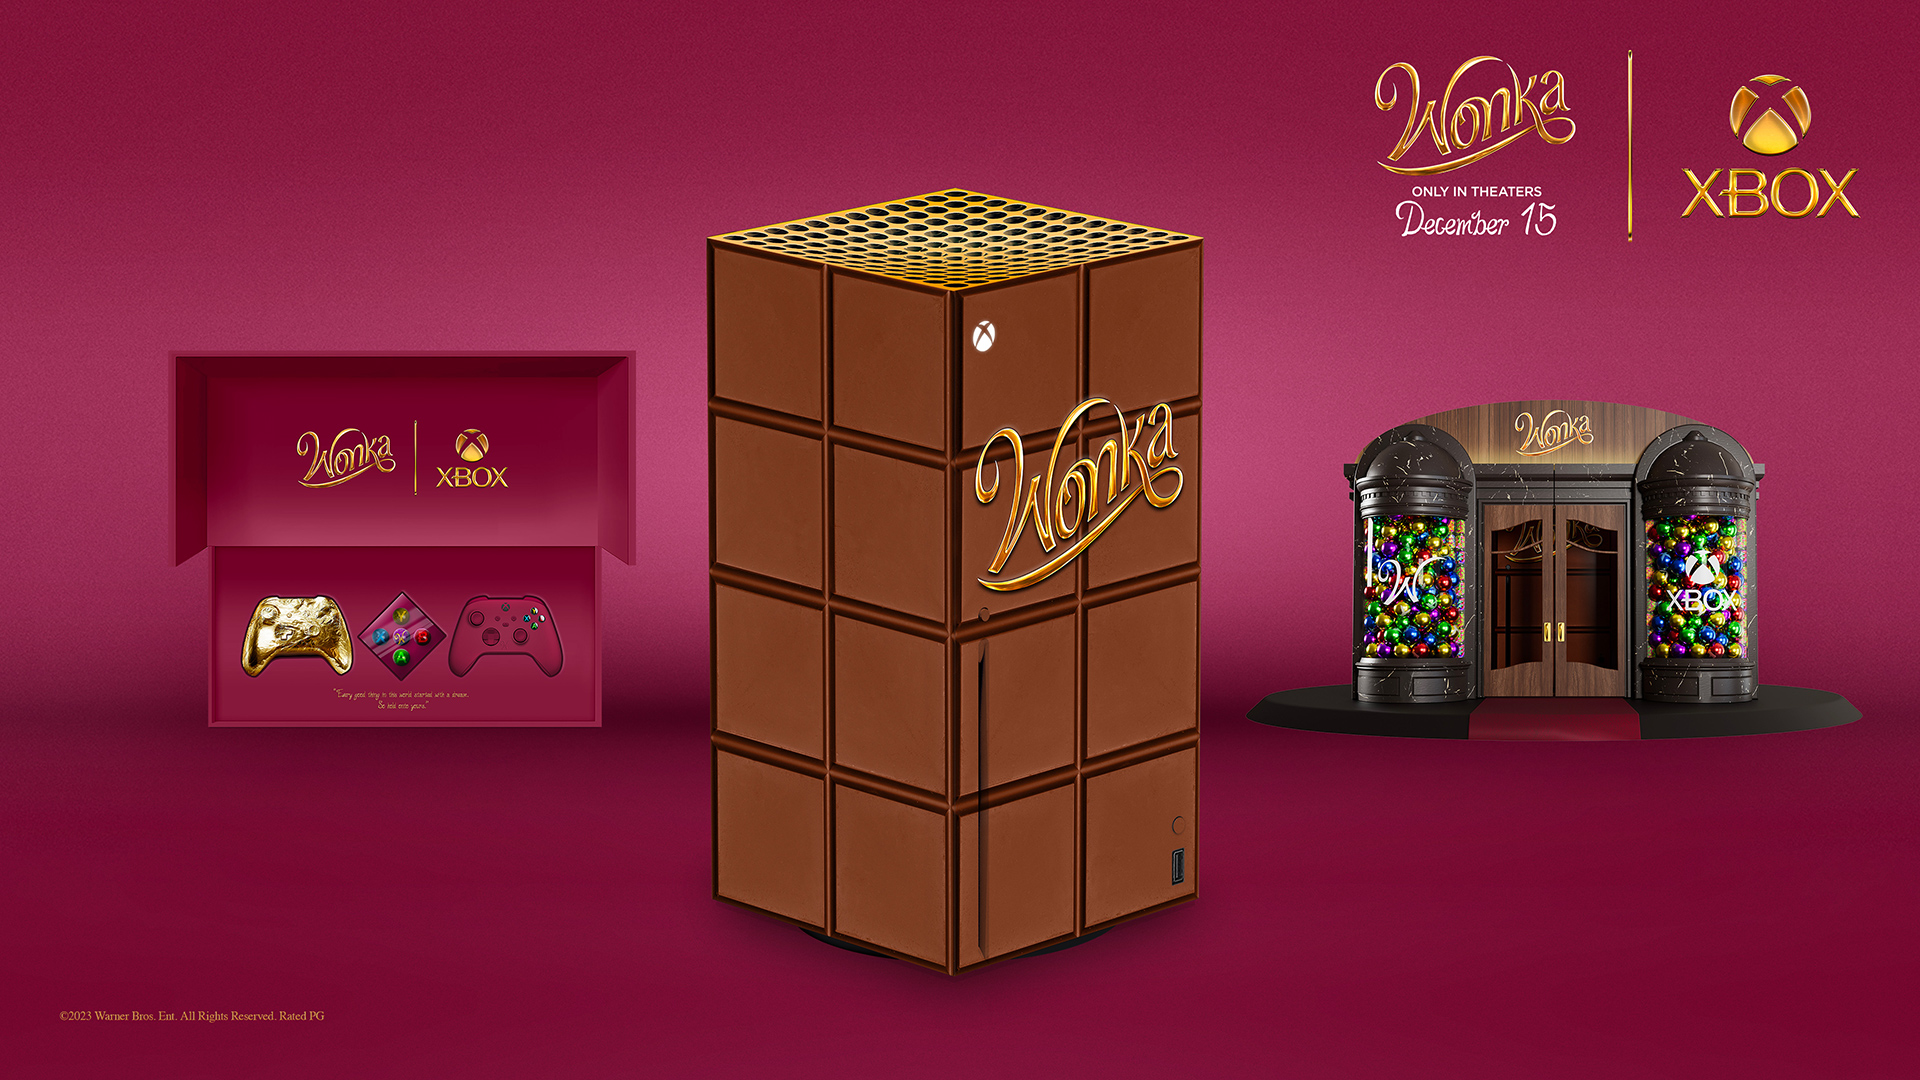 För att fira den snart premiärvisade filmen "Wonka" har Xbox tillkännagivit ett samarbete med Warner Bros. och lottar ut en Series X med en gamepad i choklad